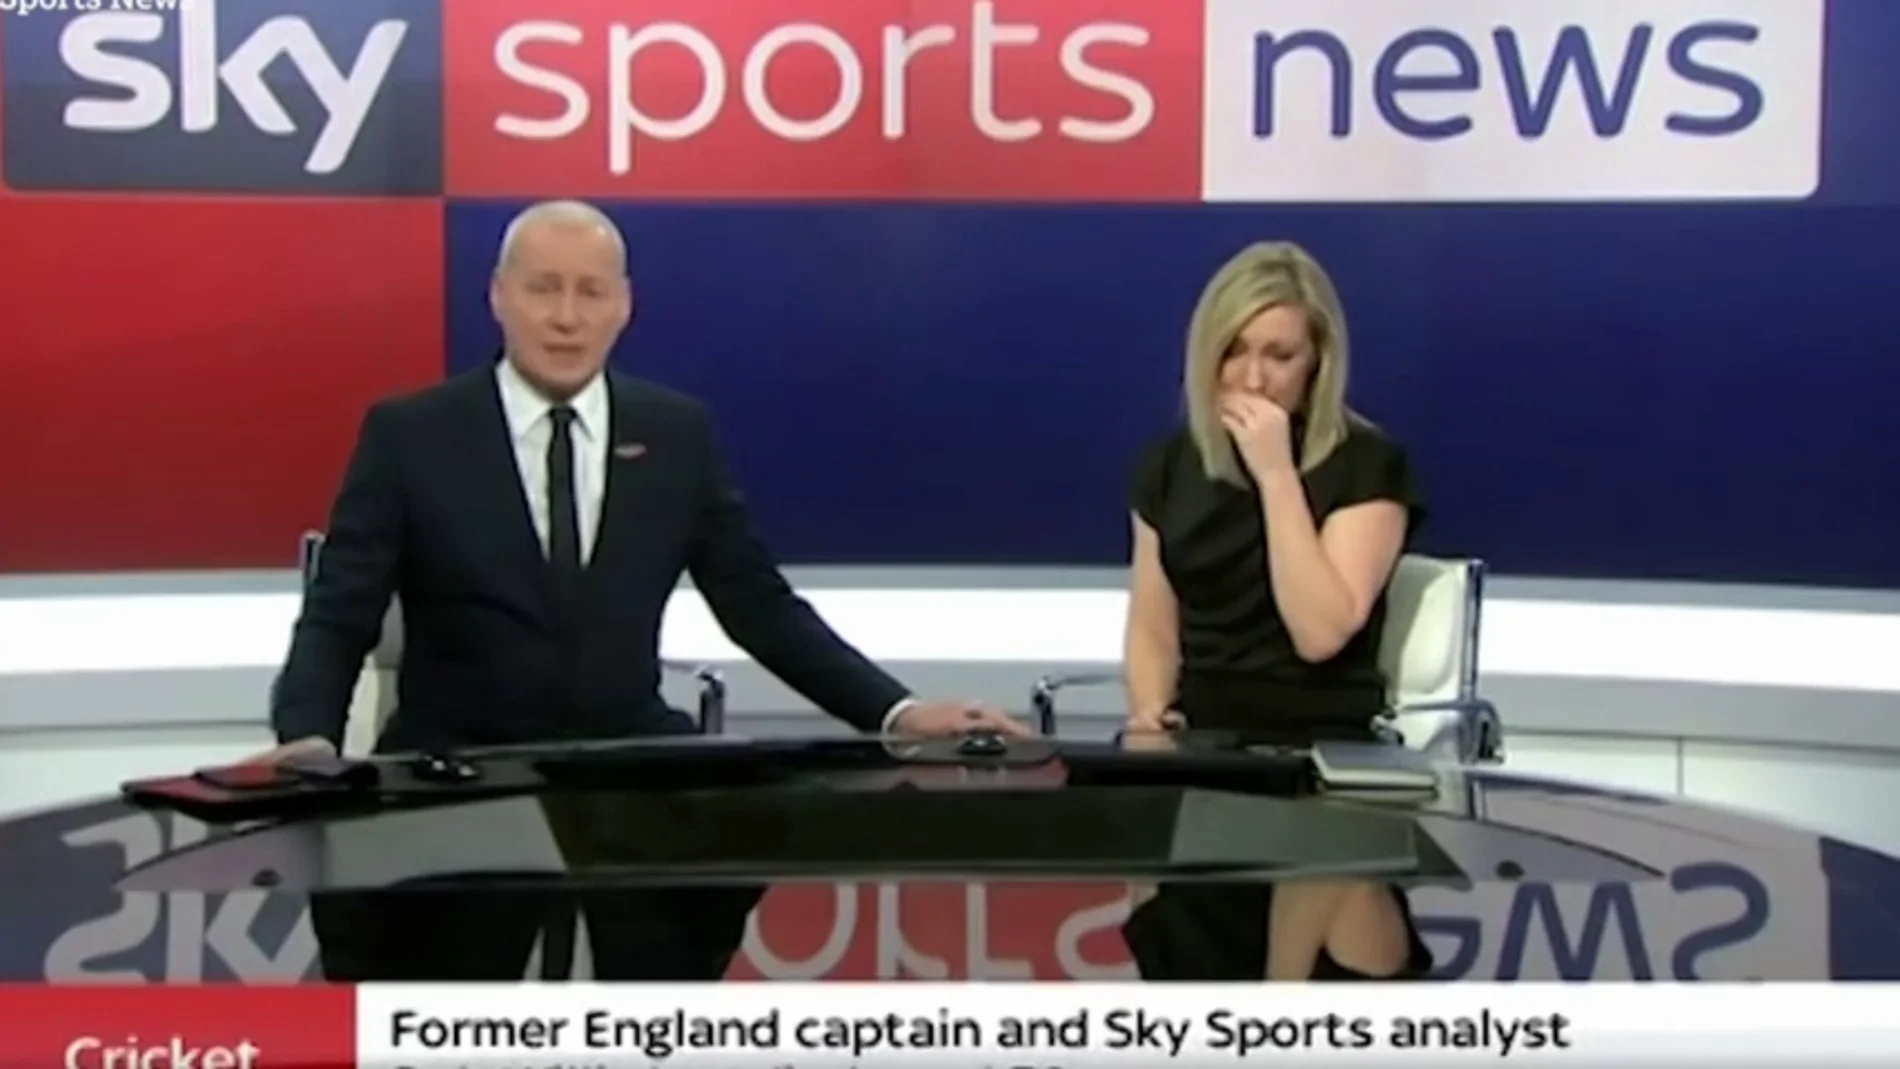 Una presentadora llora al contar en directo la muerte de una leyenda del deporte inglés